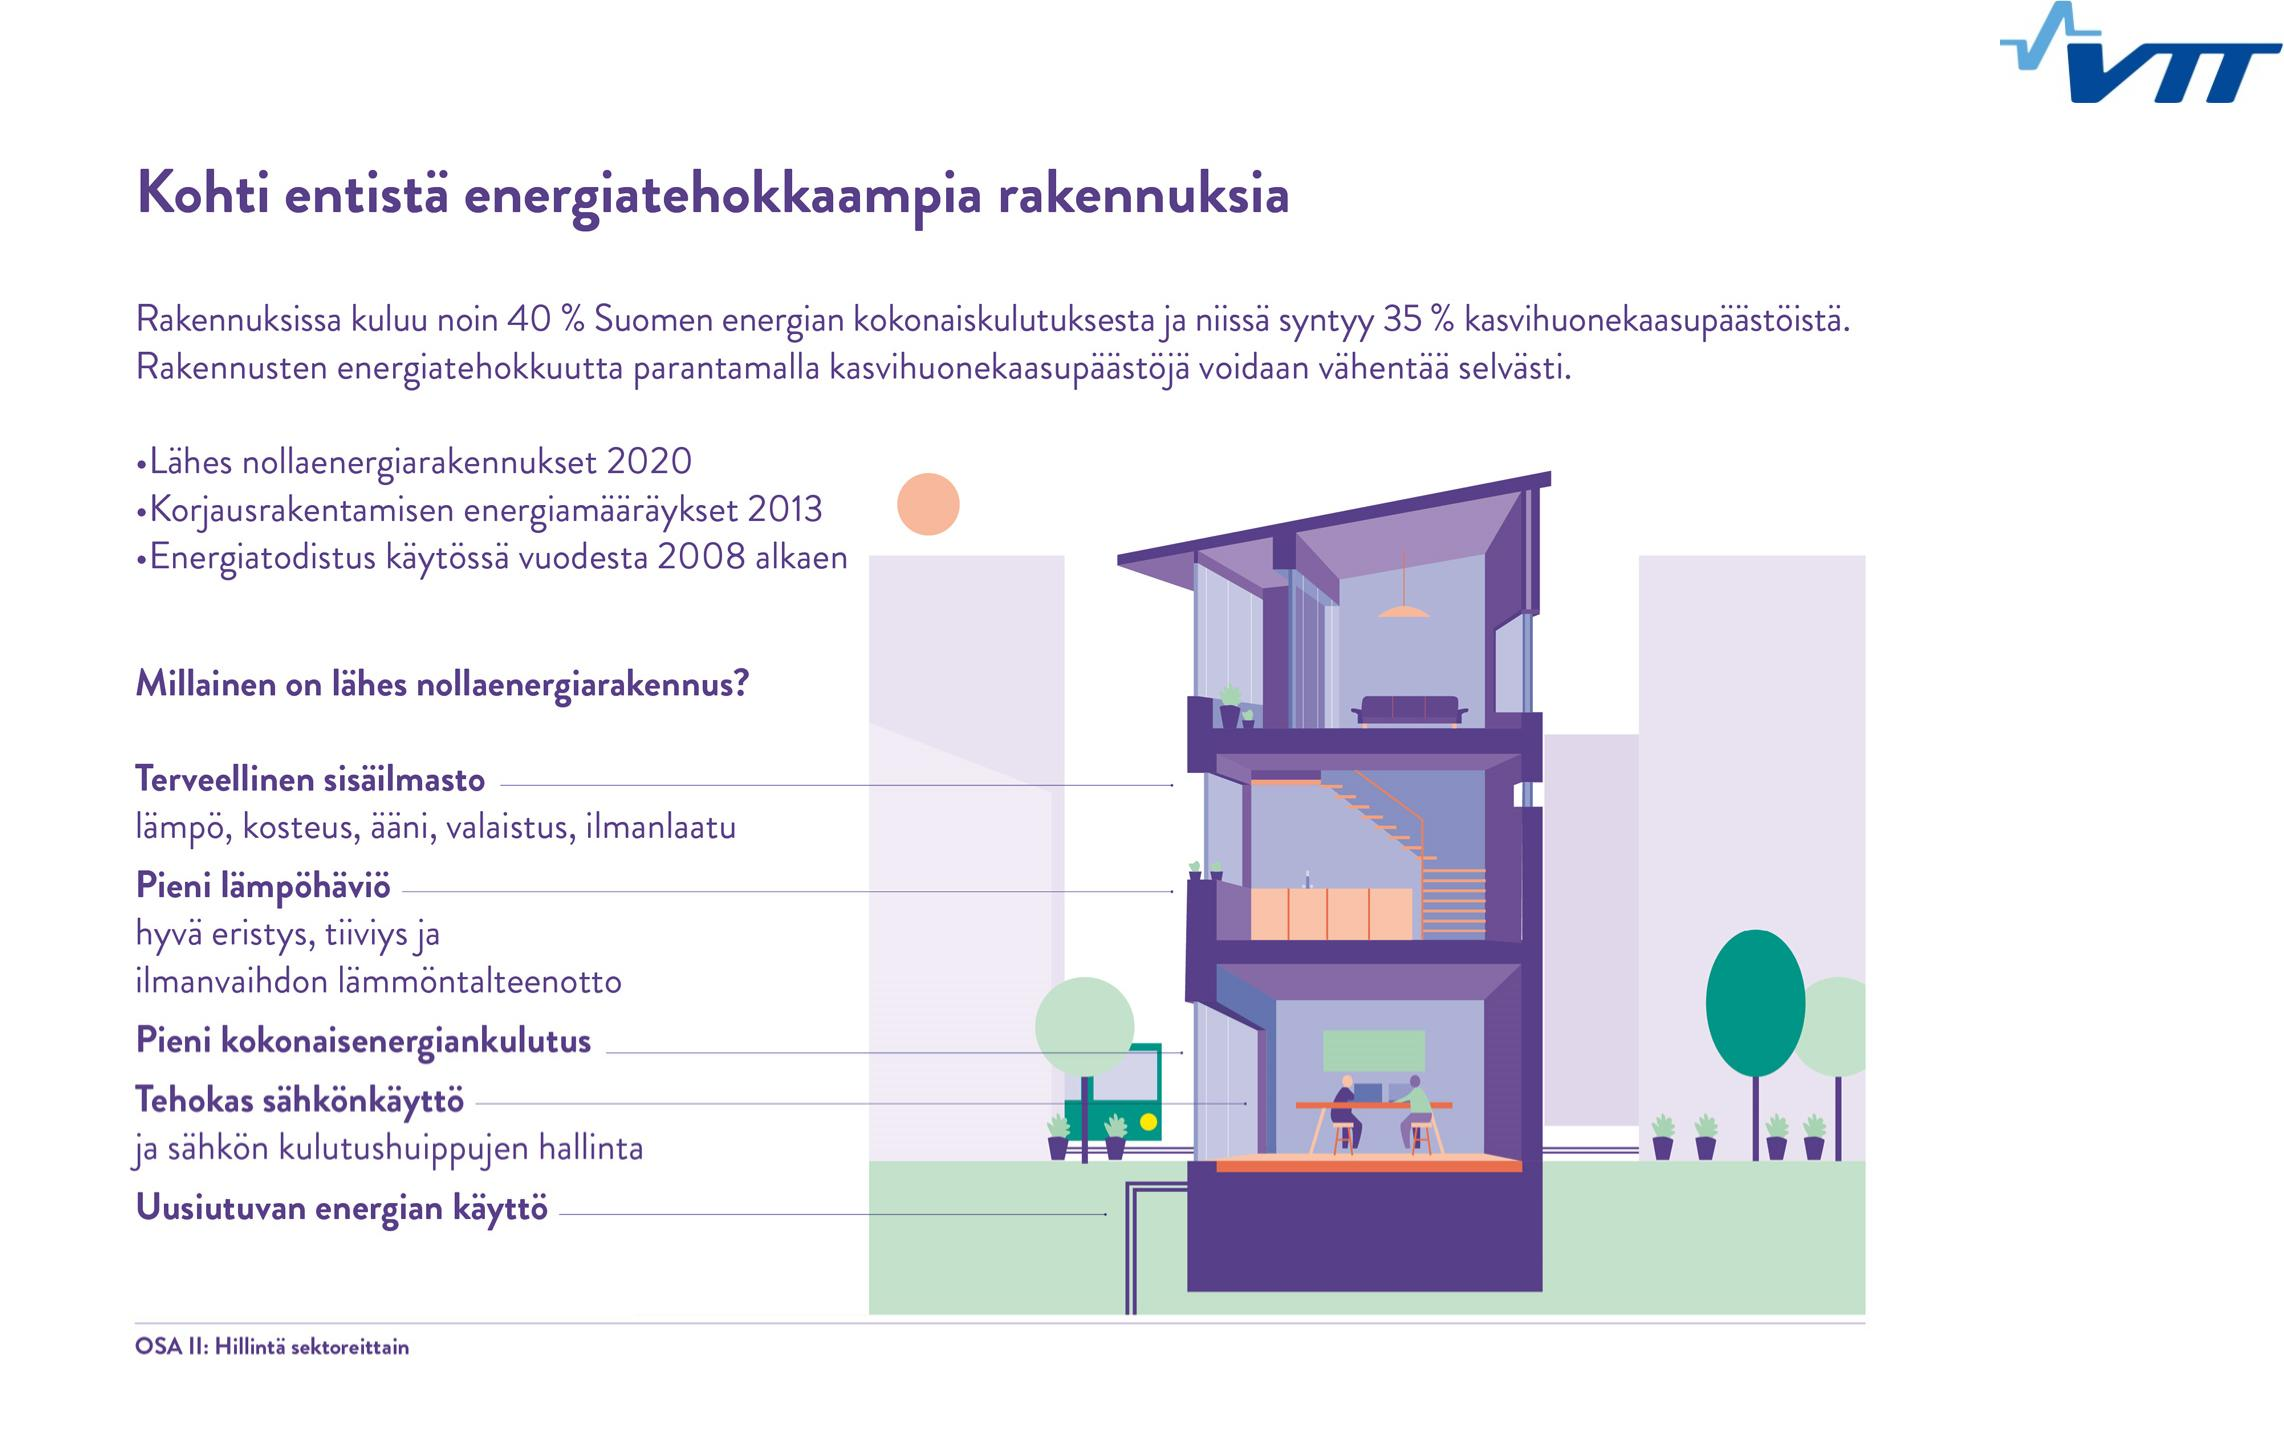 Source: Suomen ilmastopolitiikka kohti vähähiilistä ja energiatehokasta yhteiskuntaa.